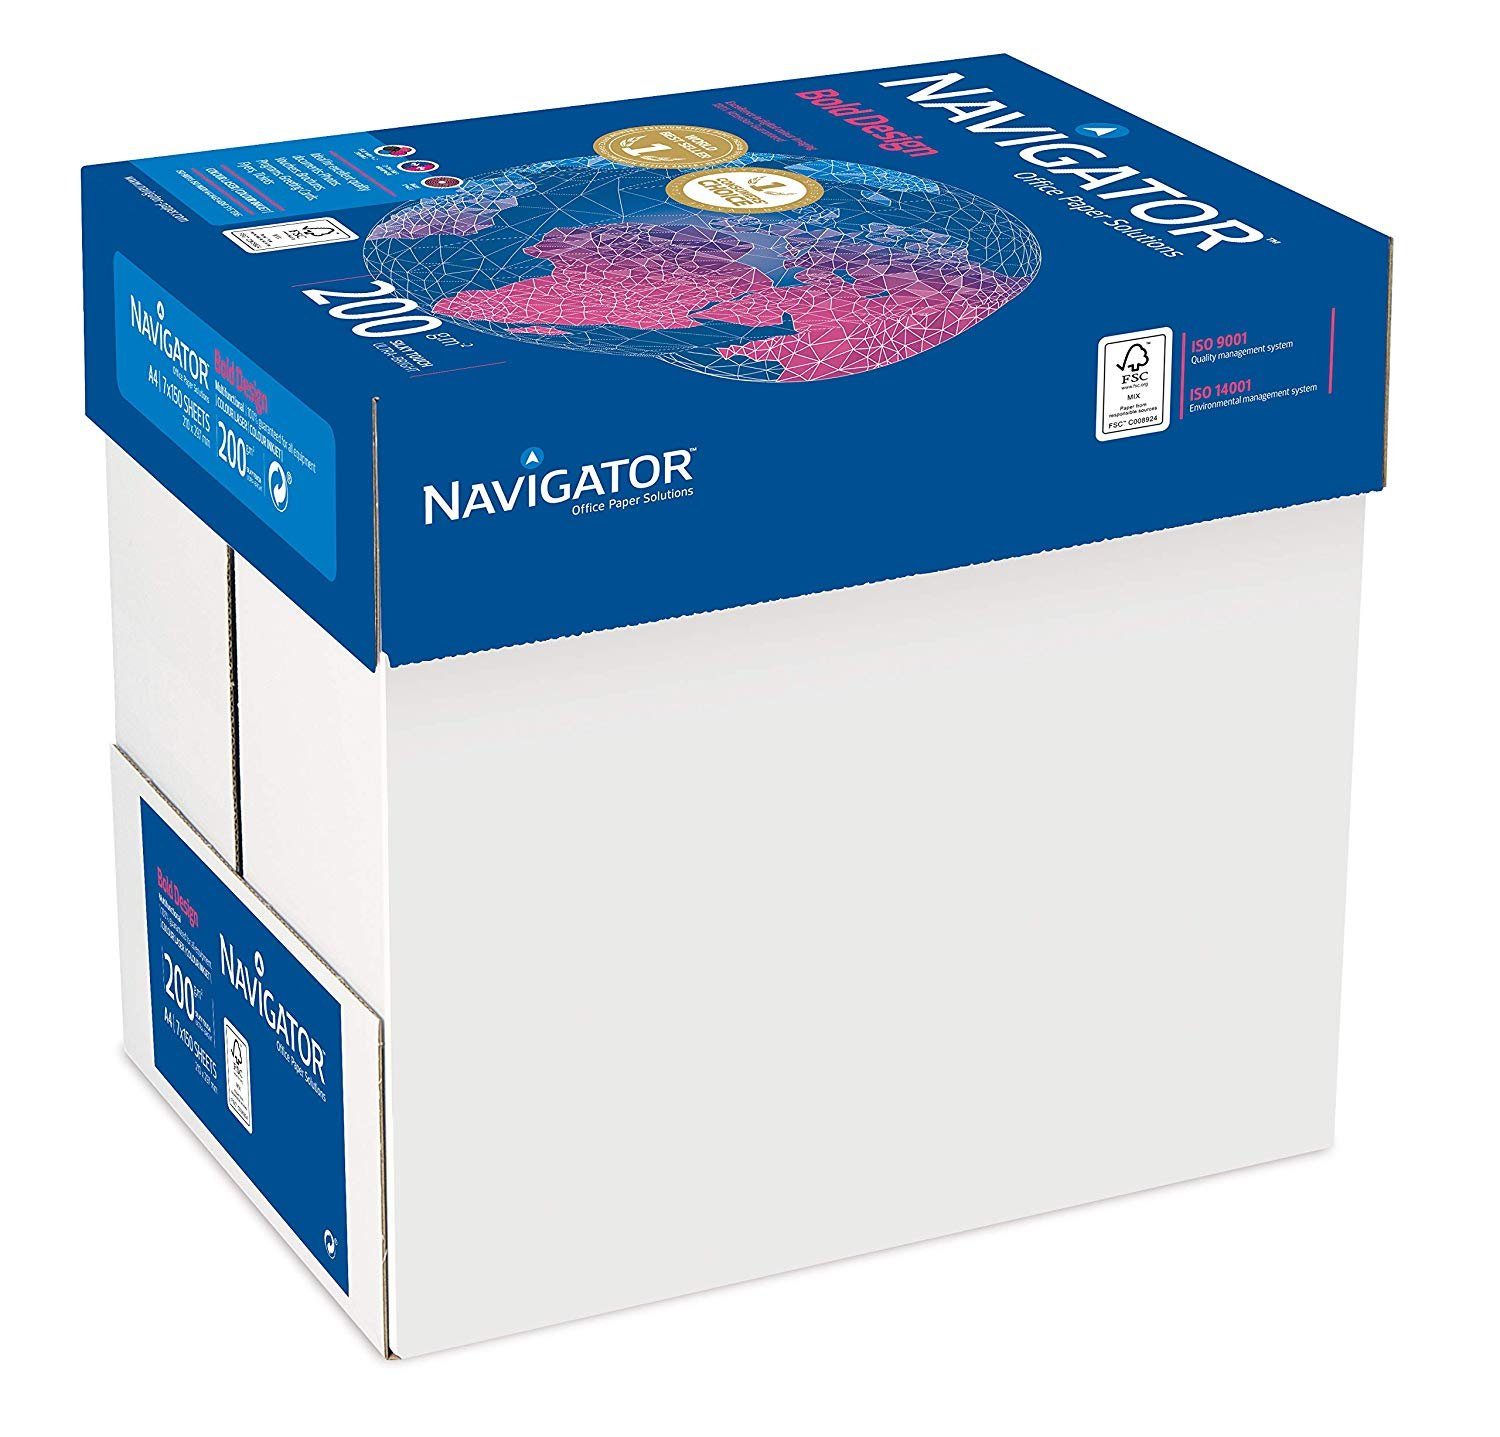 1050 Drucker- 200g/m² Bold und DIN-A4 Kopierpapier Design Kopierpapier Navigator Blatt weiß NAVIGATOR